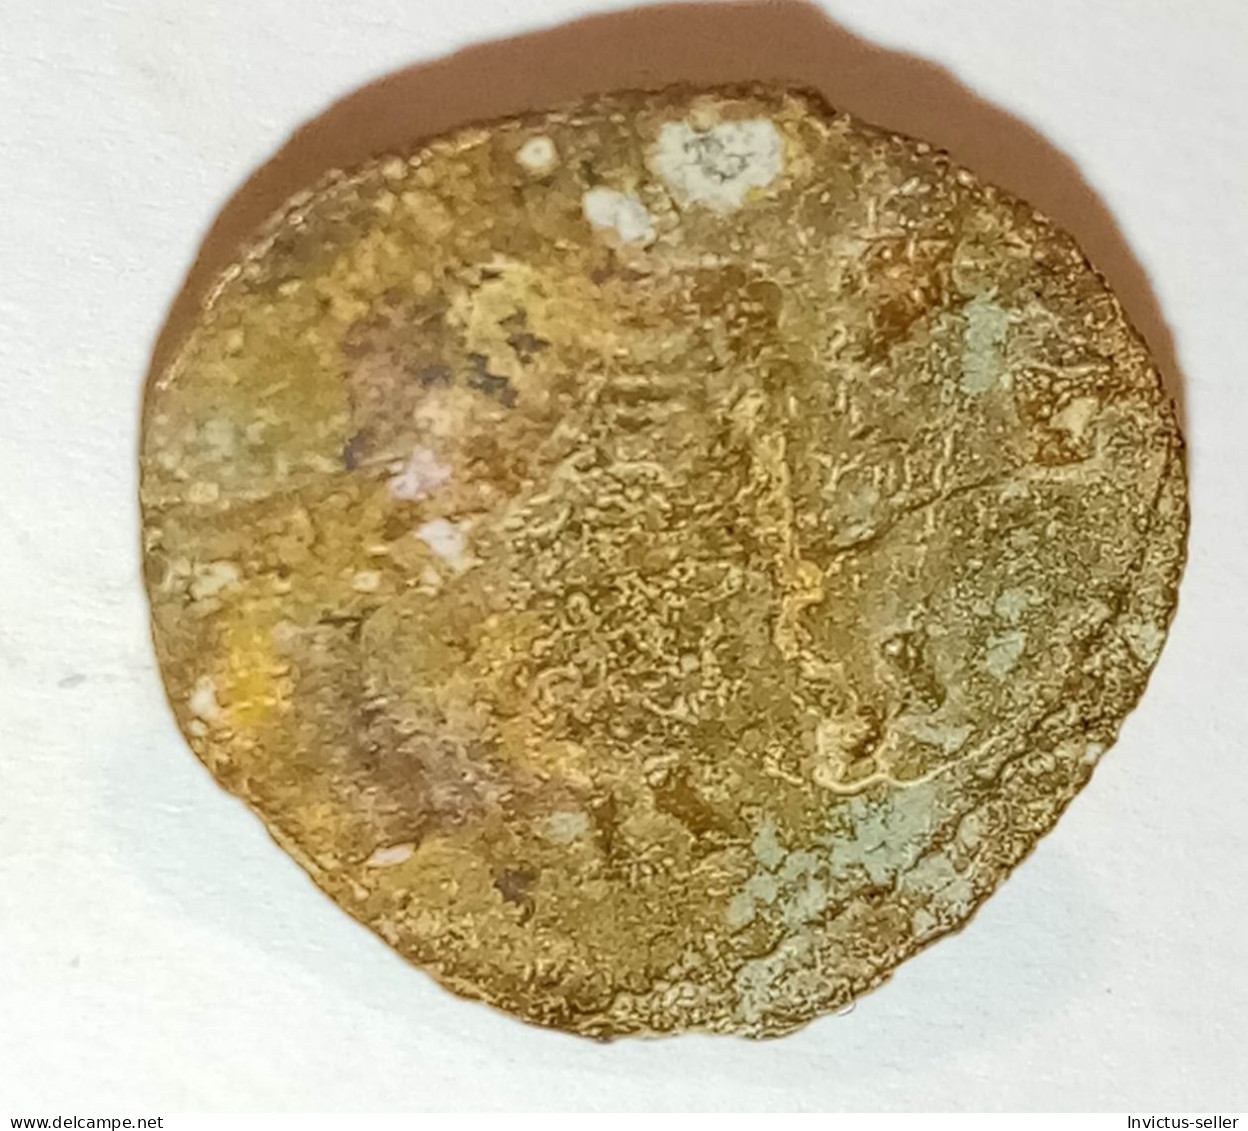 Moneta romana imperatore Claudio il Gotico 268-270 -  ANCIENT ROMAN COIN  IMPERATOR CLAUDIUS GOTHICUS - COD 9